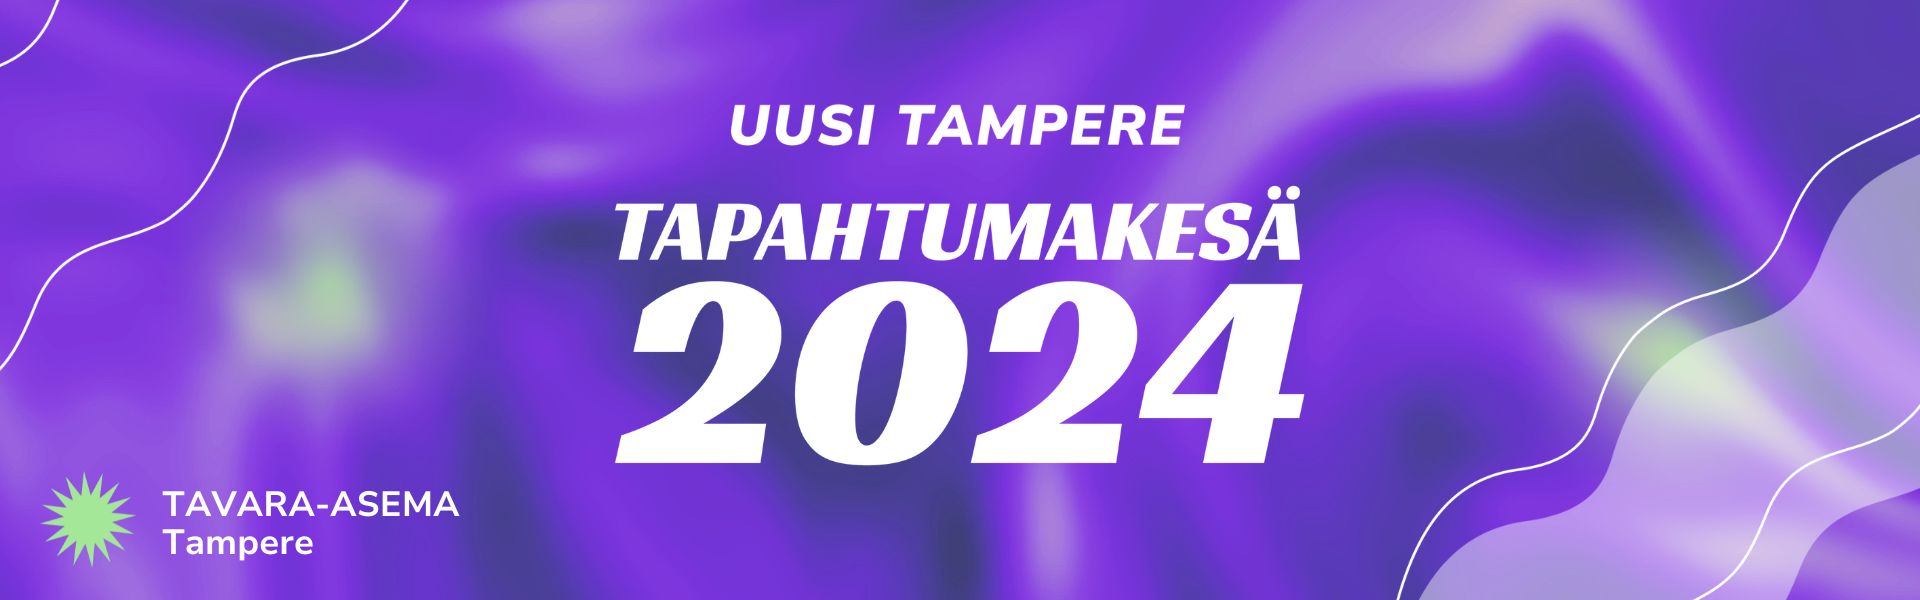 Violetinsävyinen banneri, jossa ylhäällä Uusi Tampereen logo ja sen alla teksti "tapahtumakesä 2024".